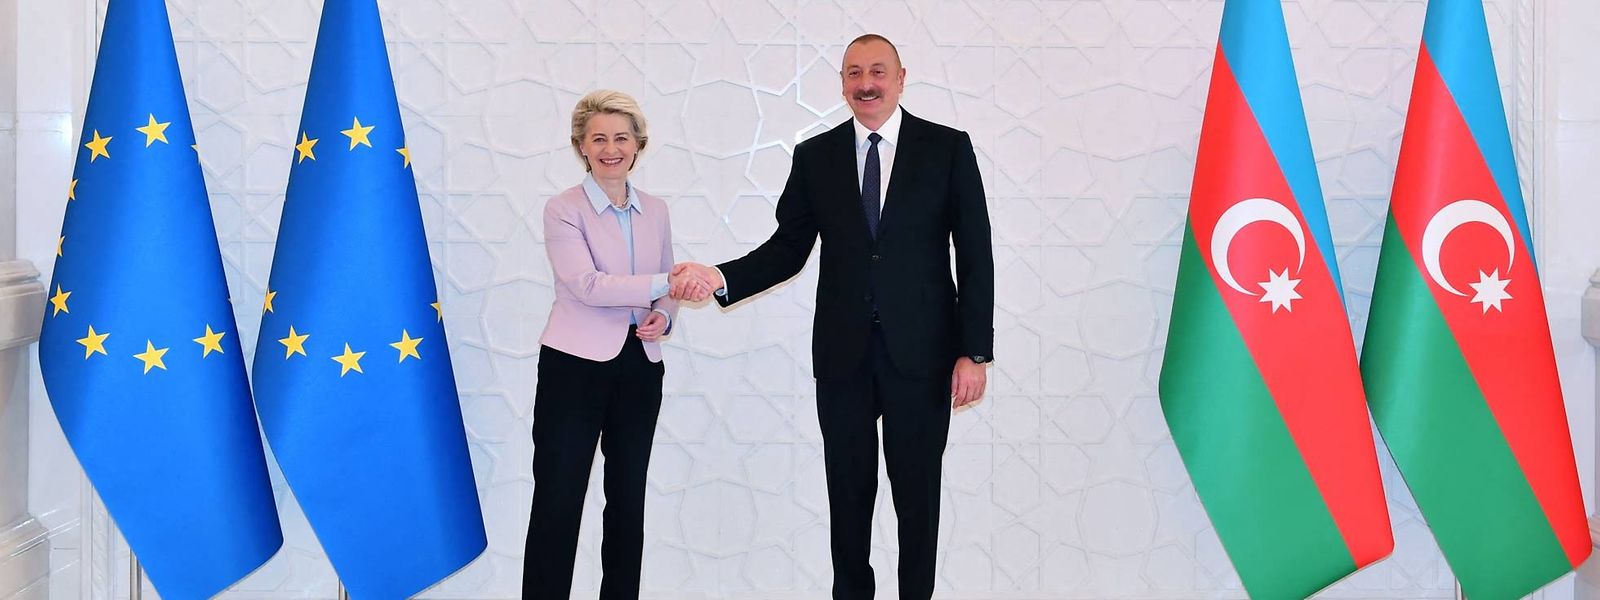 Ilham Aliyev beim Händedruck mit Ursula von der Leyen in Baku.